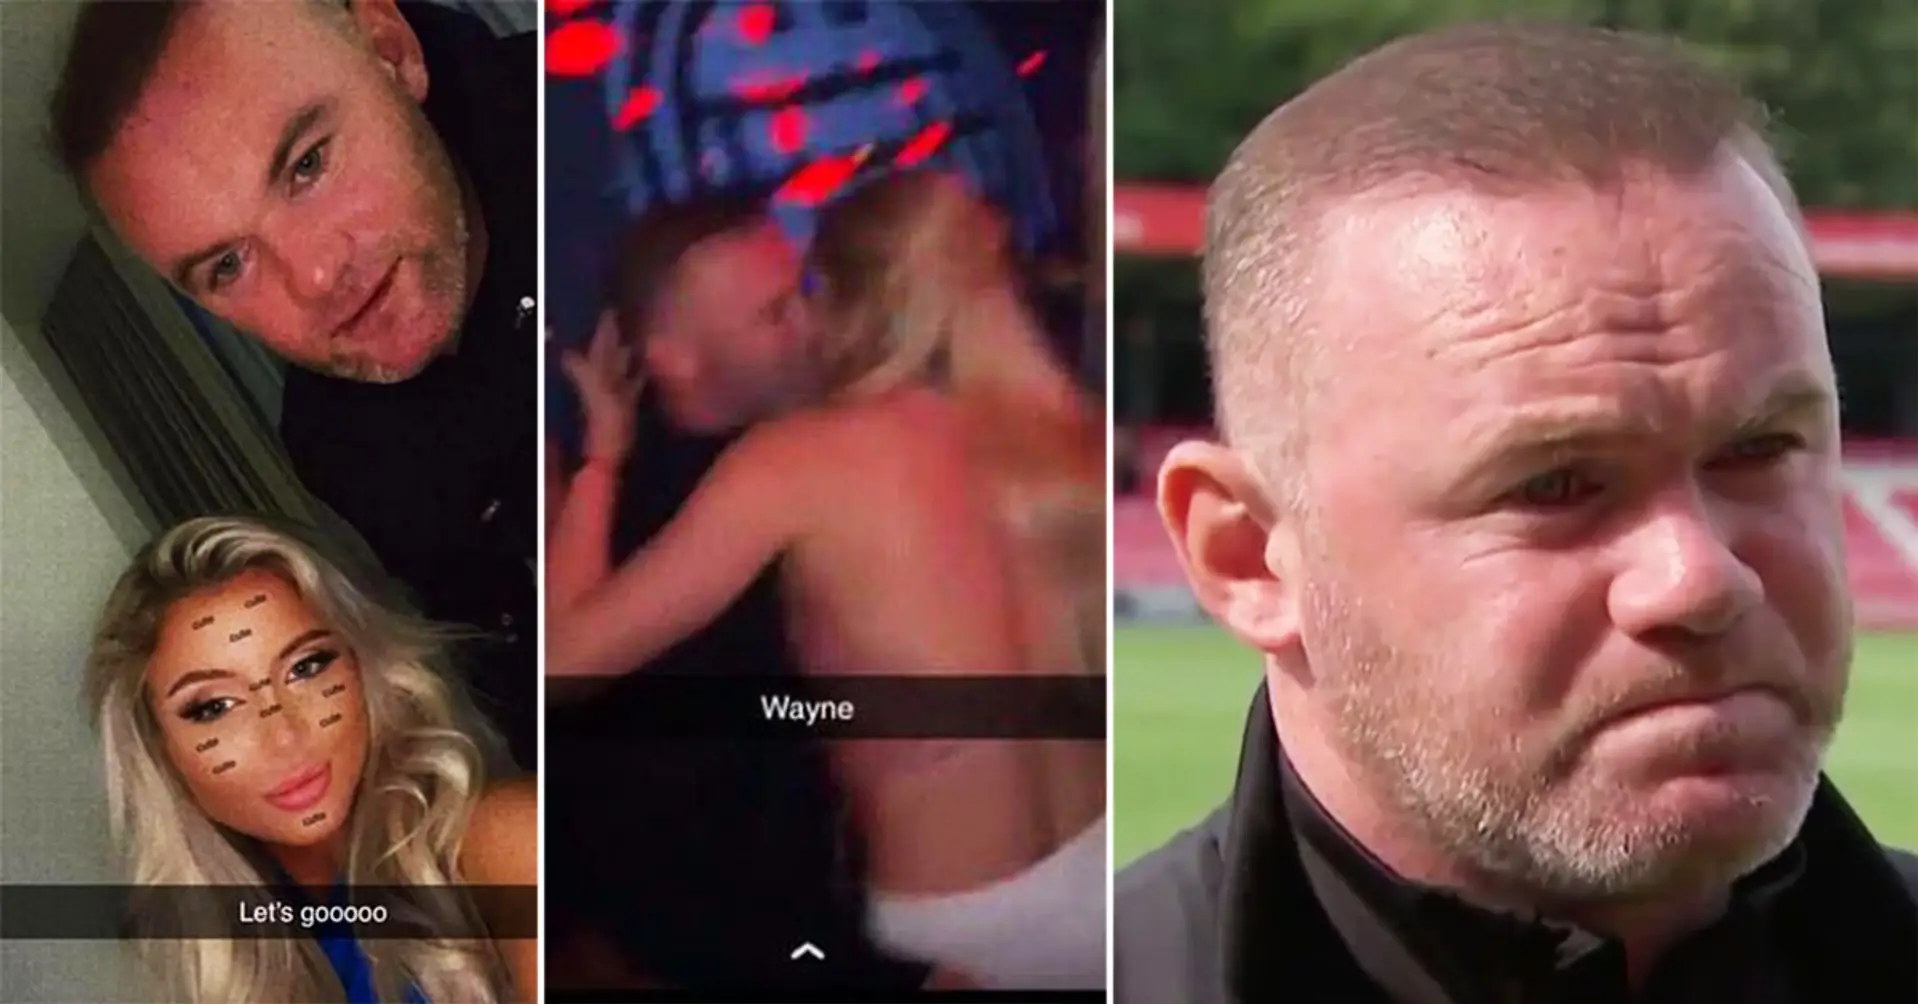 Wayne Rooney verletzt seinen eigenen Spieler und wird dann mit Models im Hotelzimmer erwischt